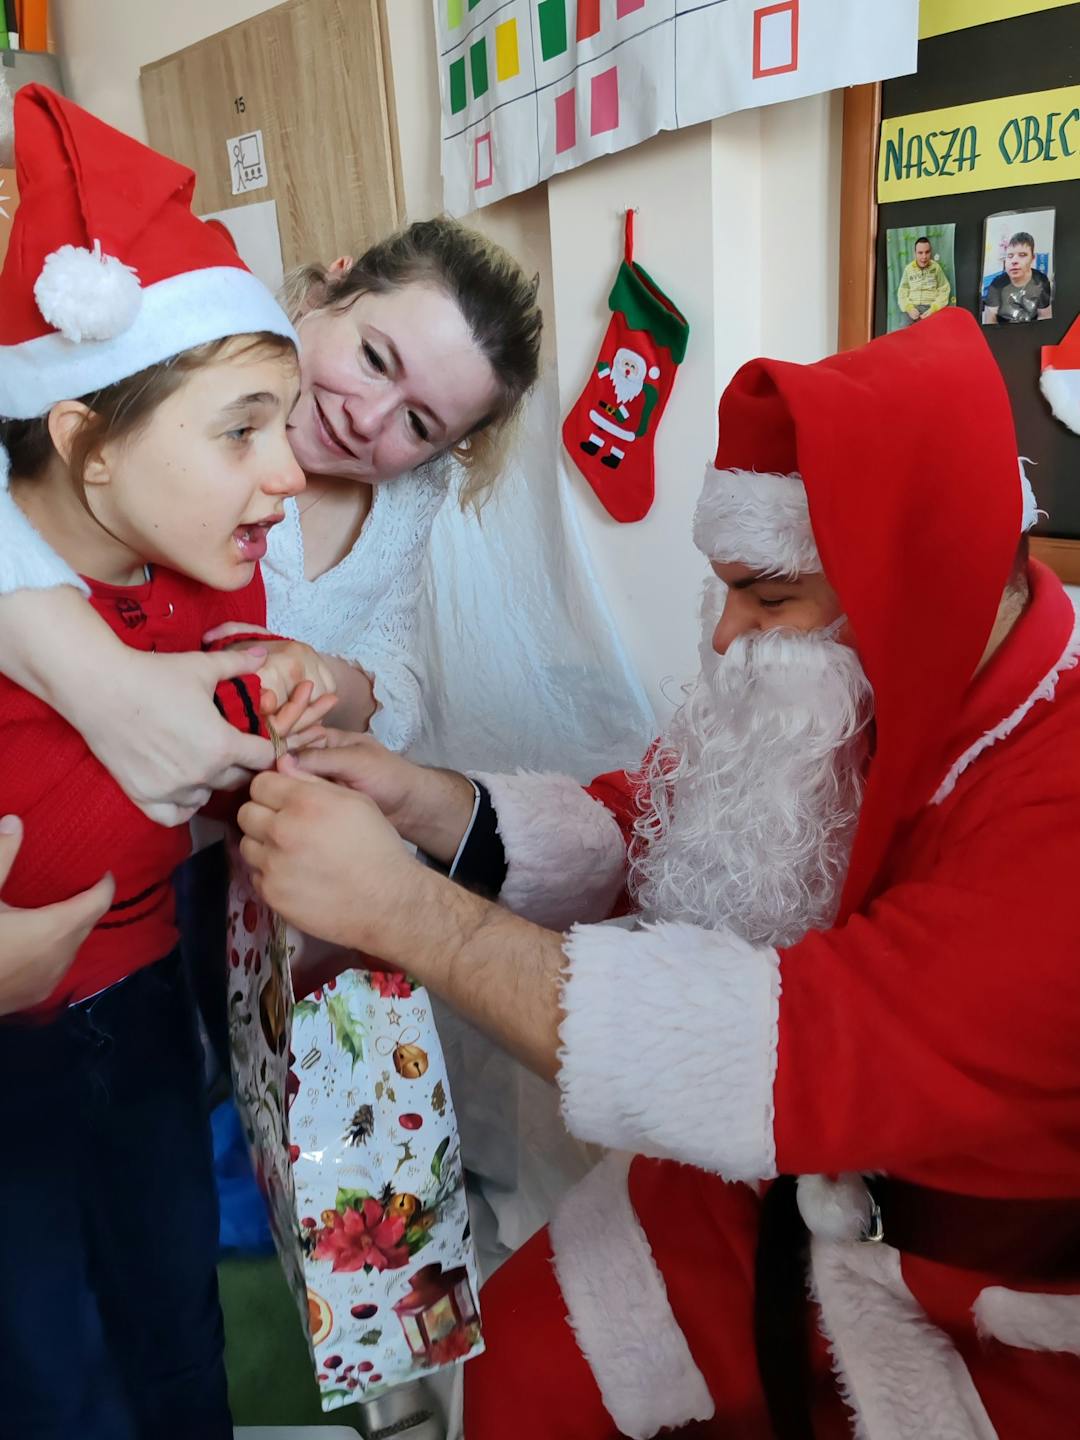 Niezapomniane spotkanie z Mikołajem! | Dziewczynka z nauczycielką przyjmują prezent od Mikołaja.jpg